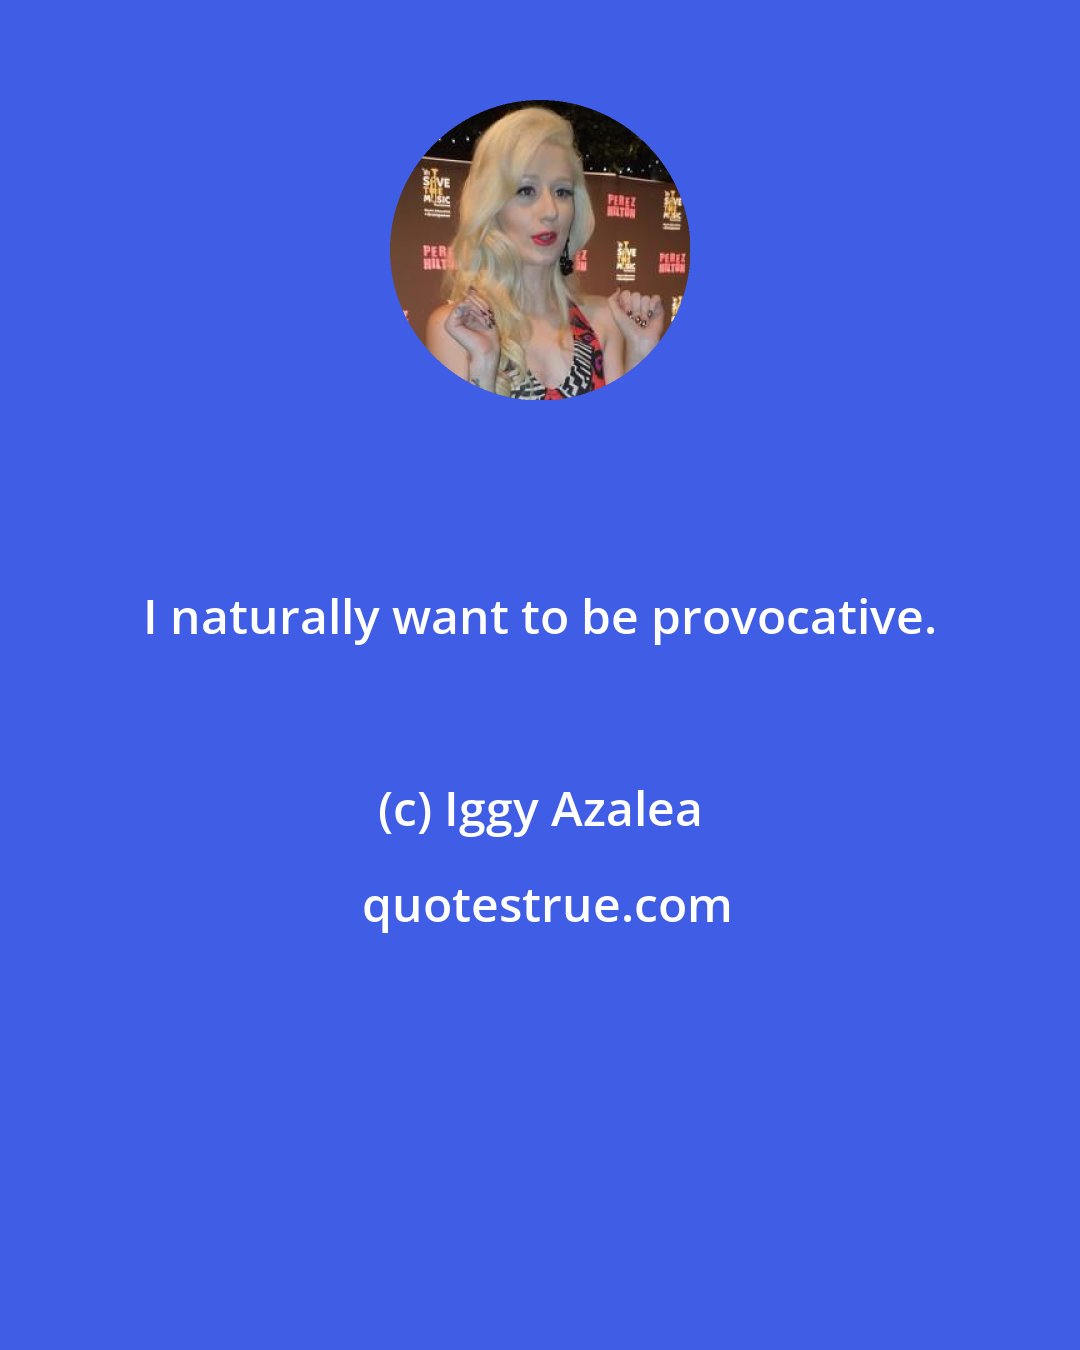 Iggy Azalea: I naturally want to be provocative.